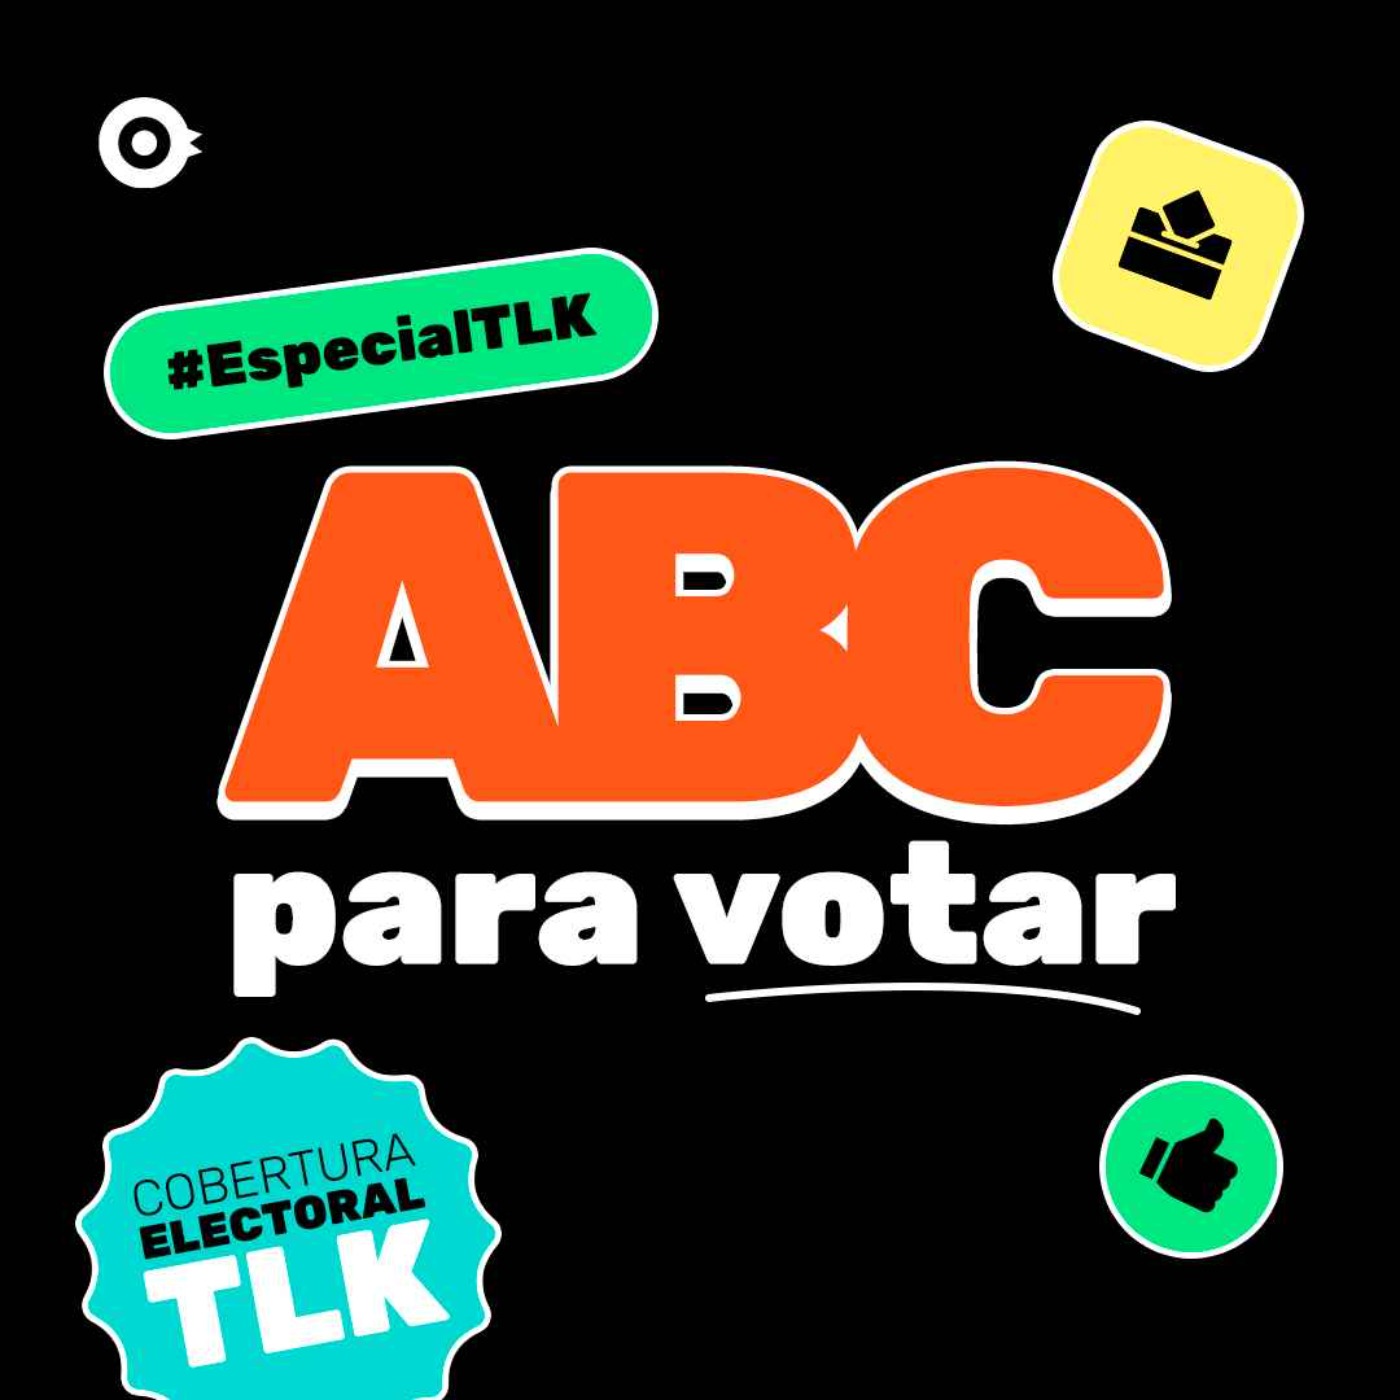 ABC para votar #EspecialTLK